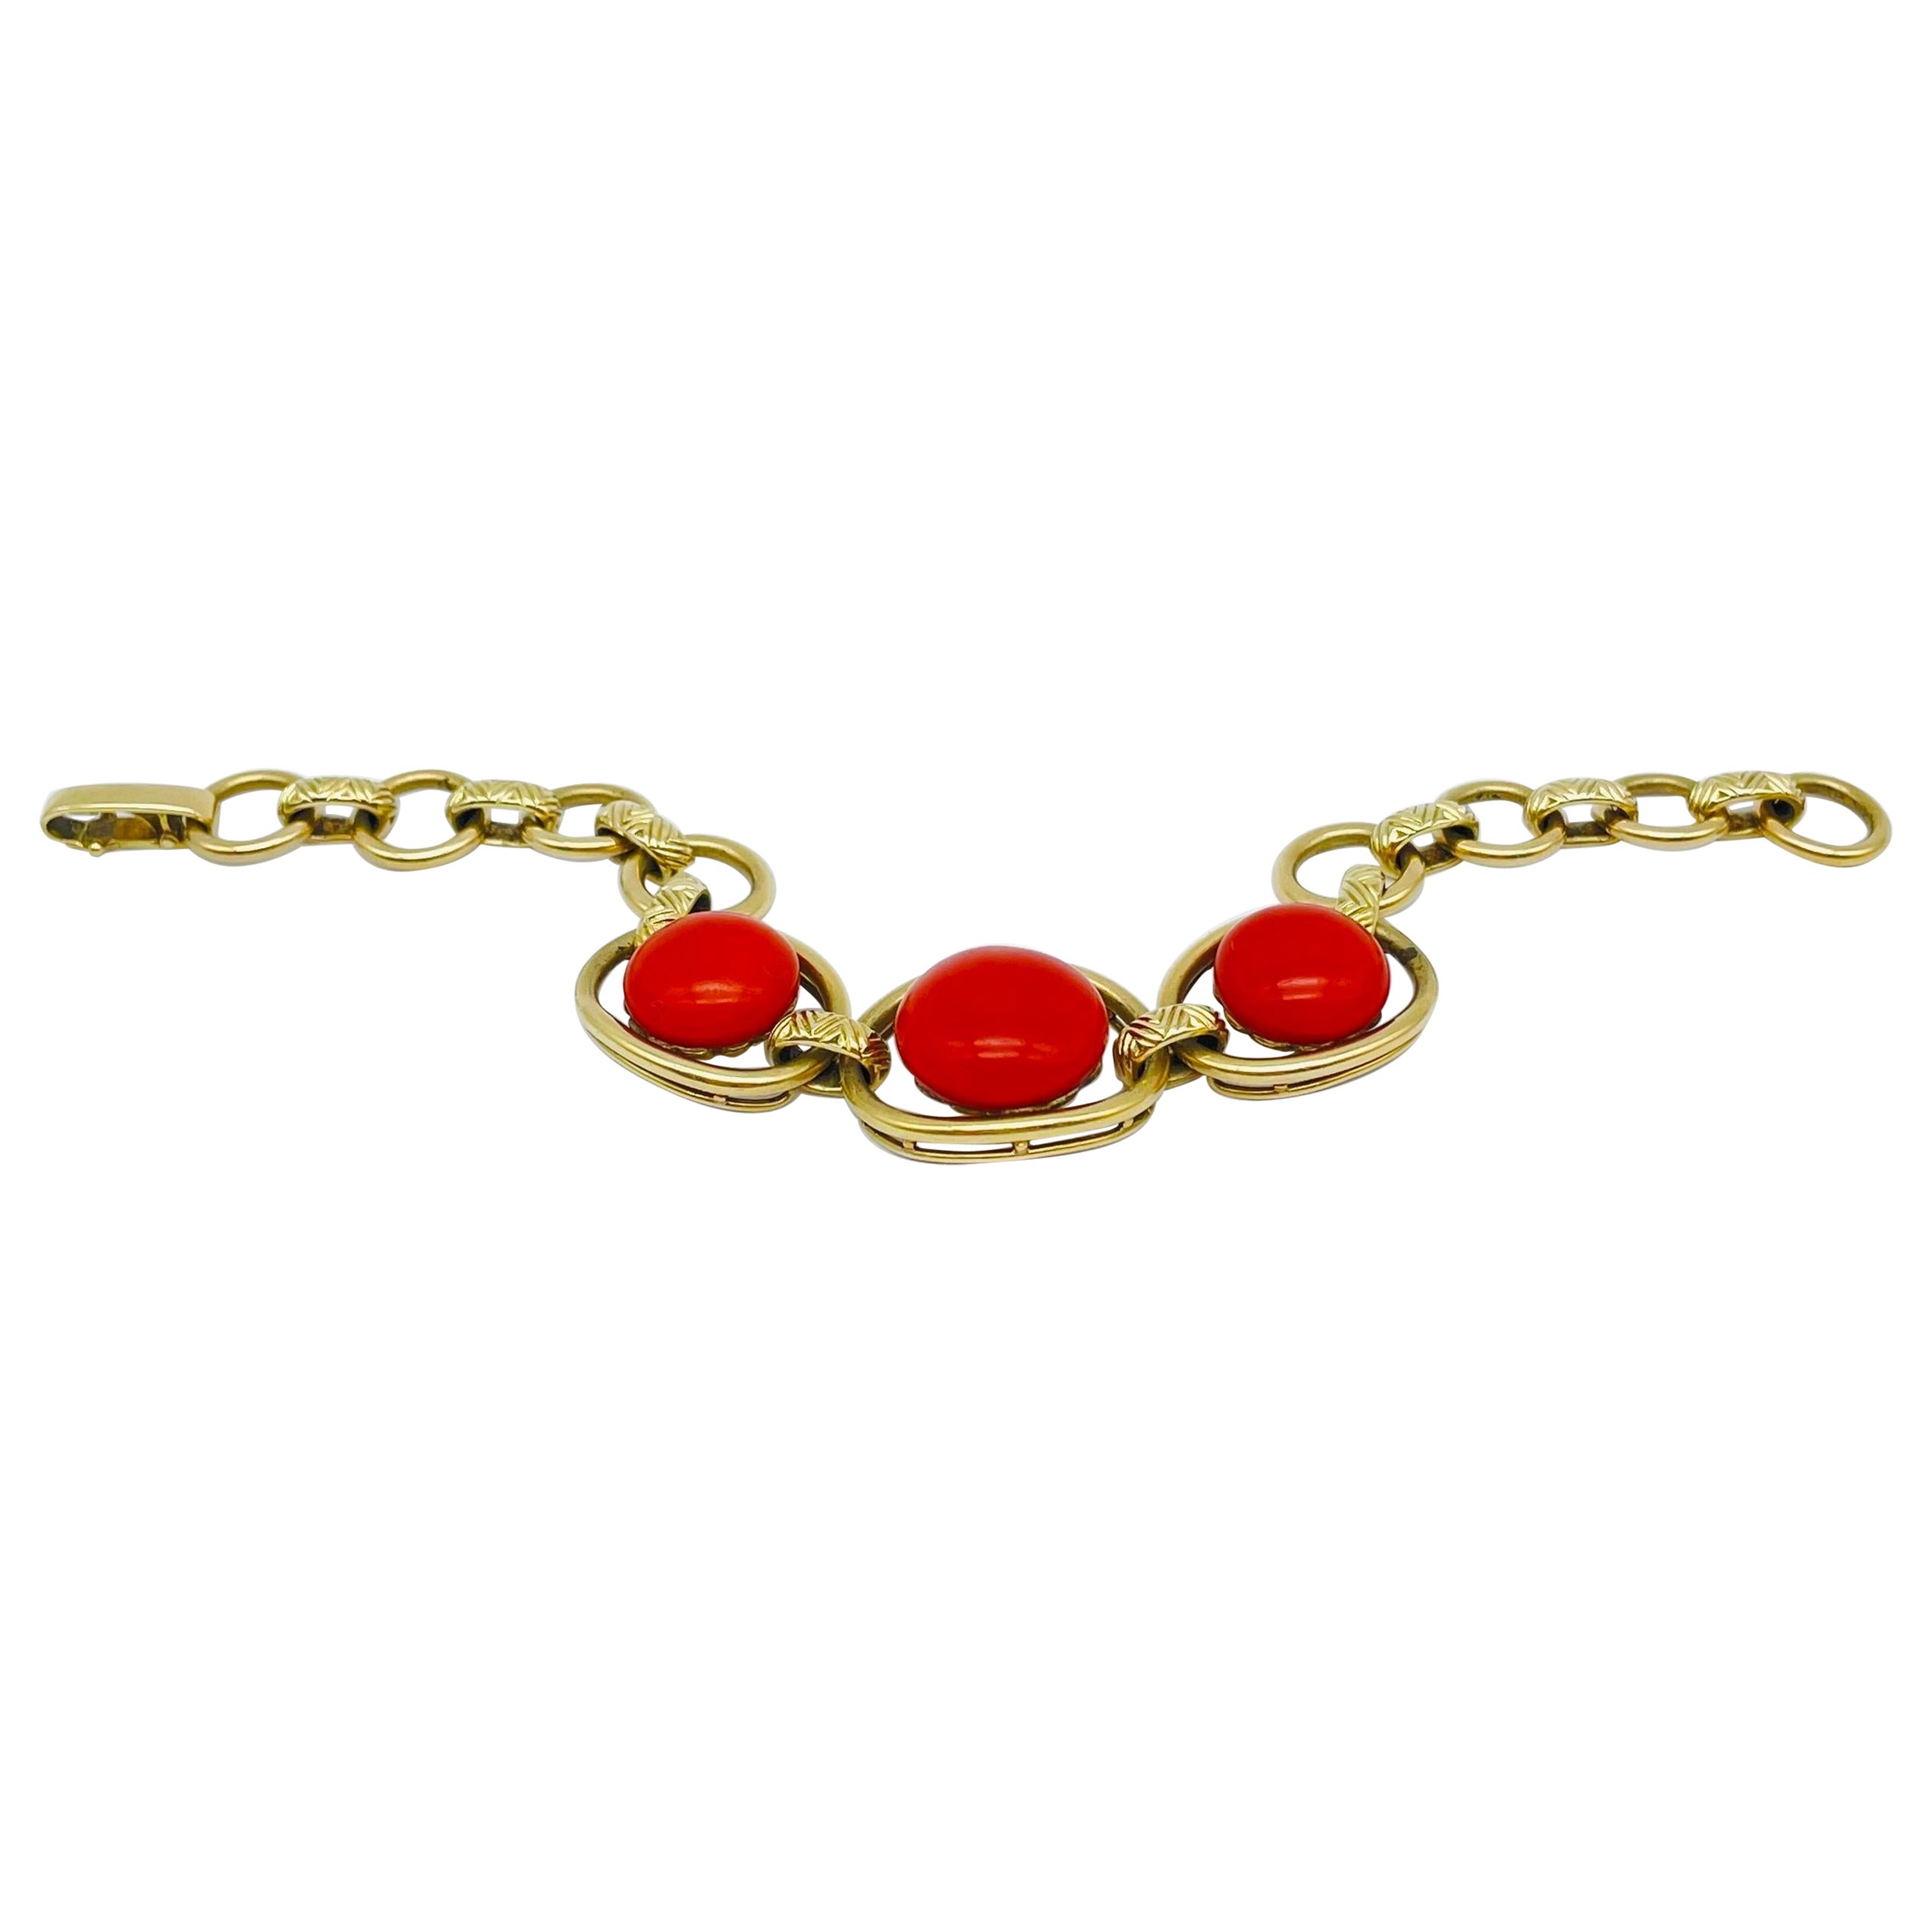 Bracelet exceptionnel à maillons en or 14 carats et corail rouge